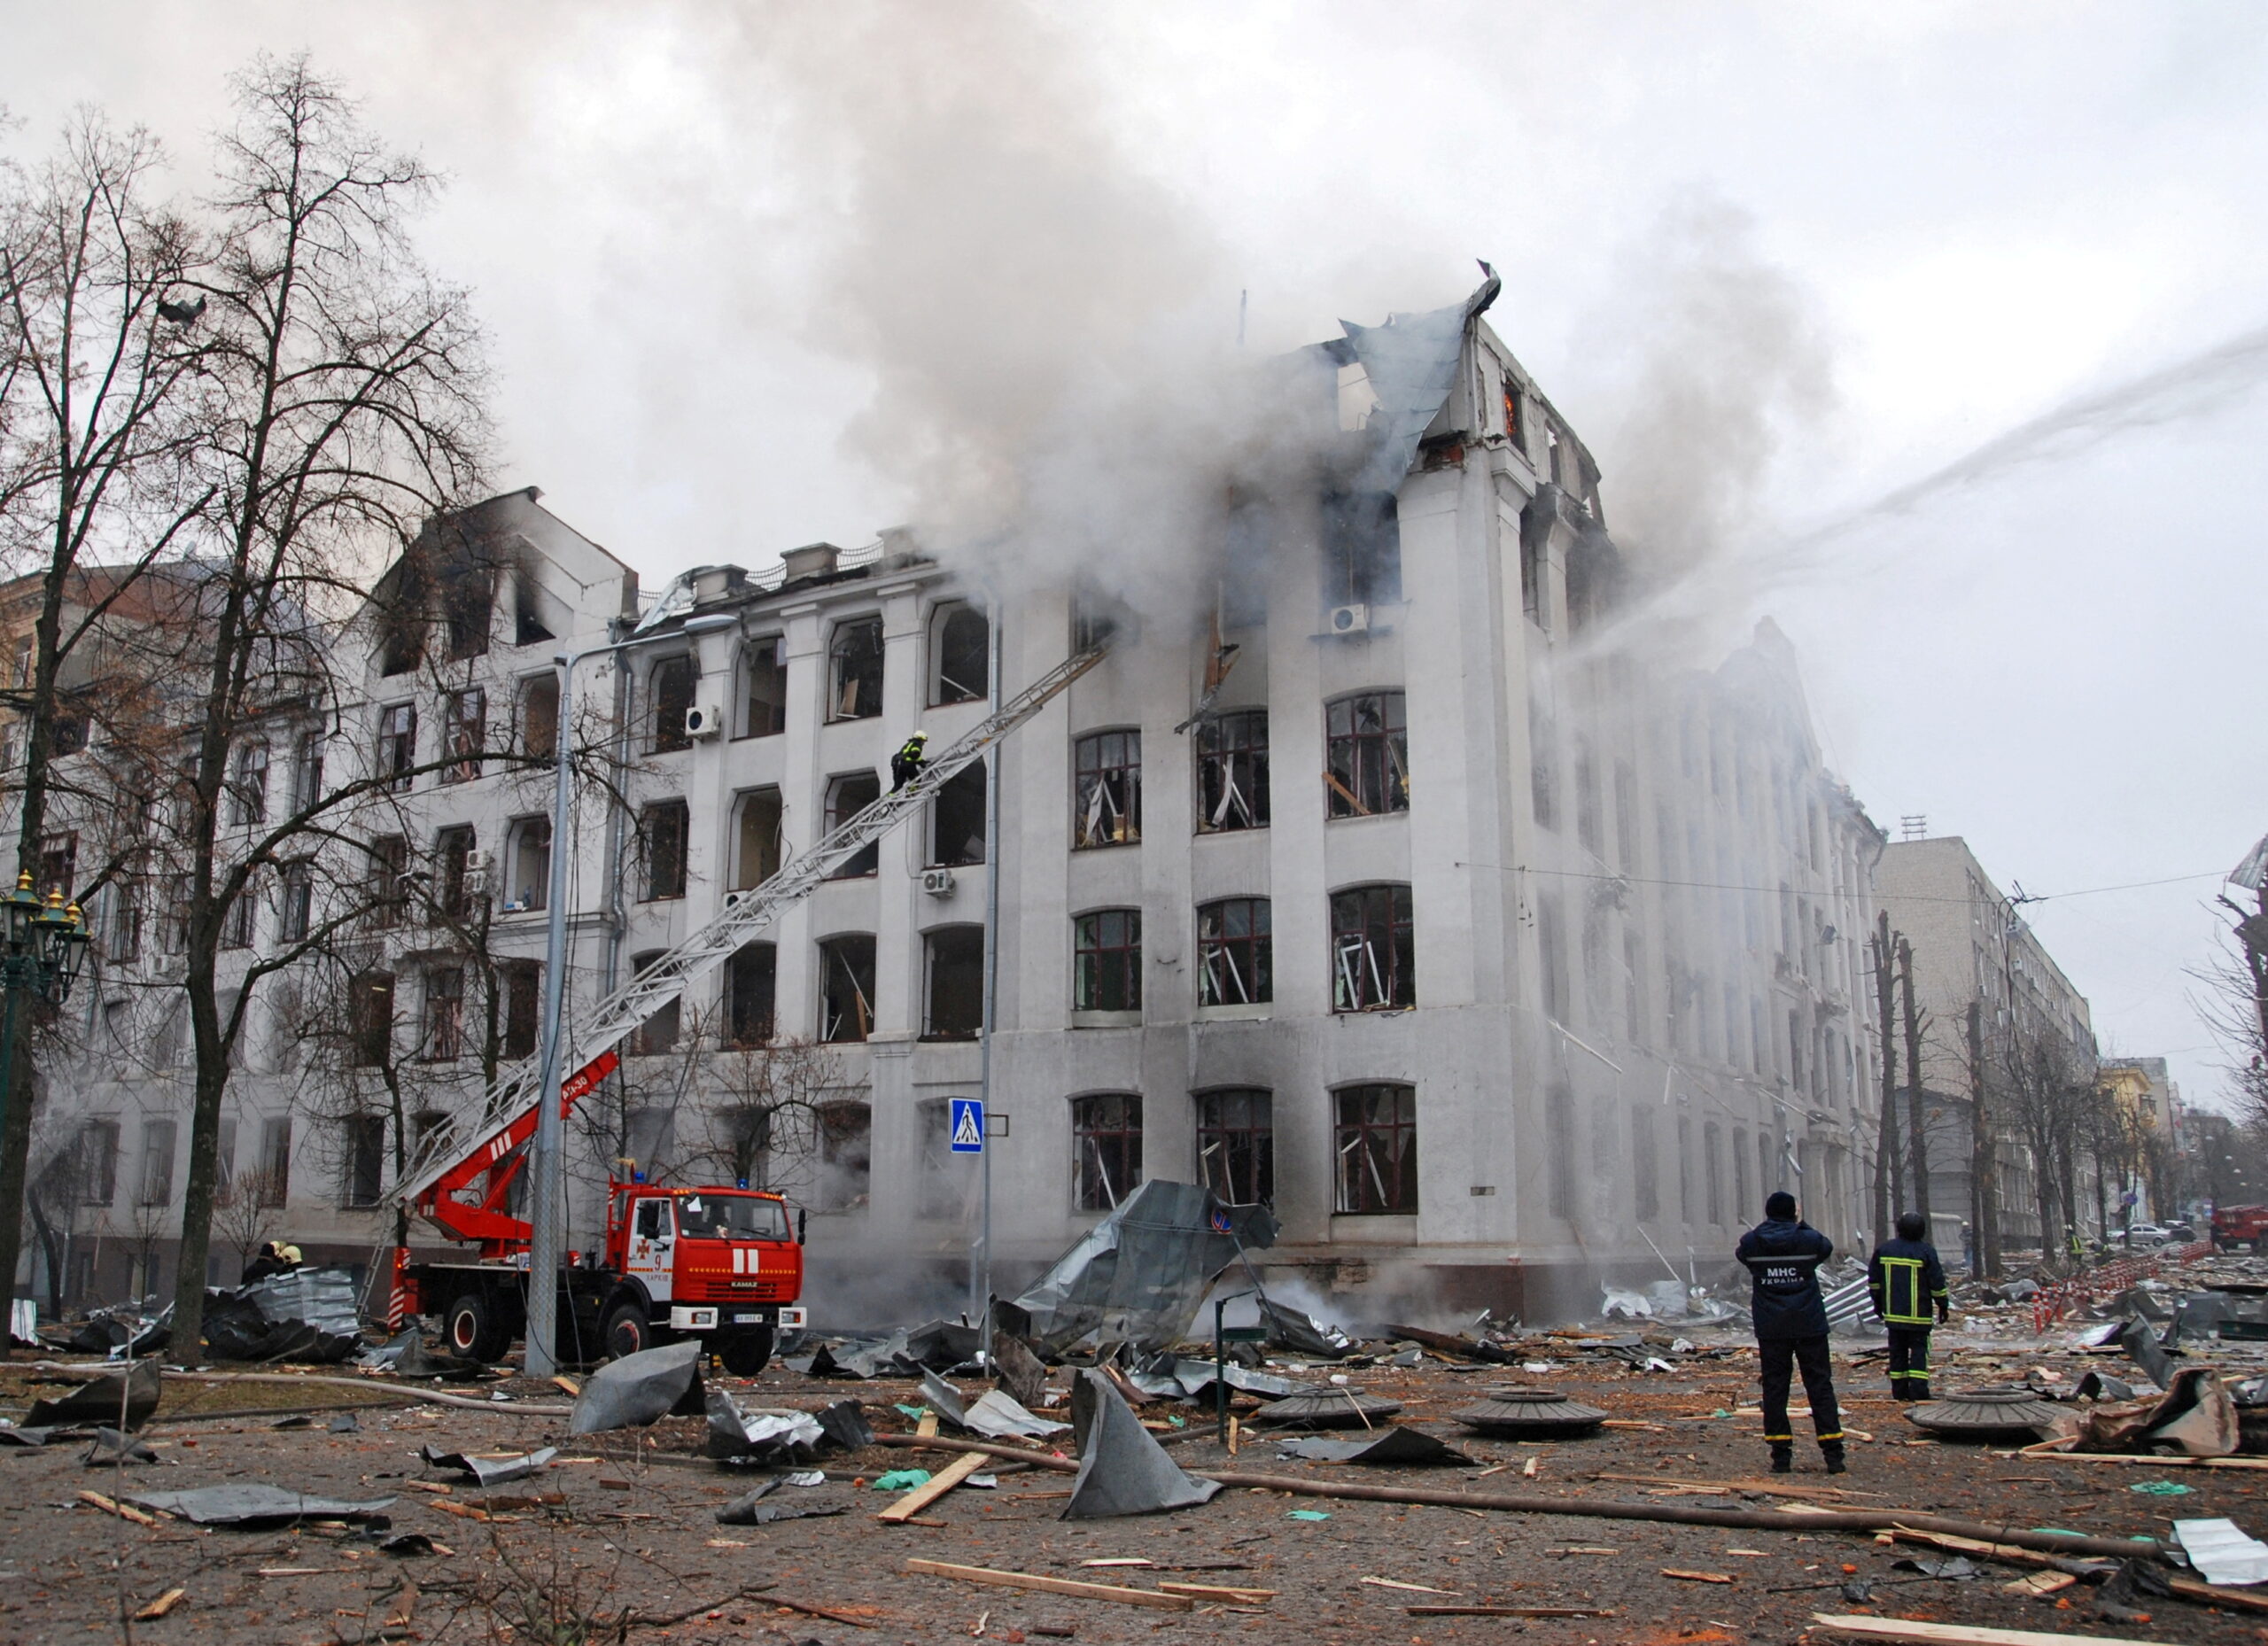 Пожарные тушат пожар в здании Харьковского национального университета, которое пострадало в результате обстрела. Фото OLEKSANDR LAPSHYN / TASS / Scanpix / Leta